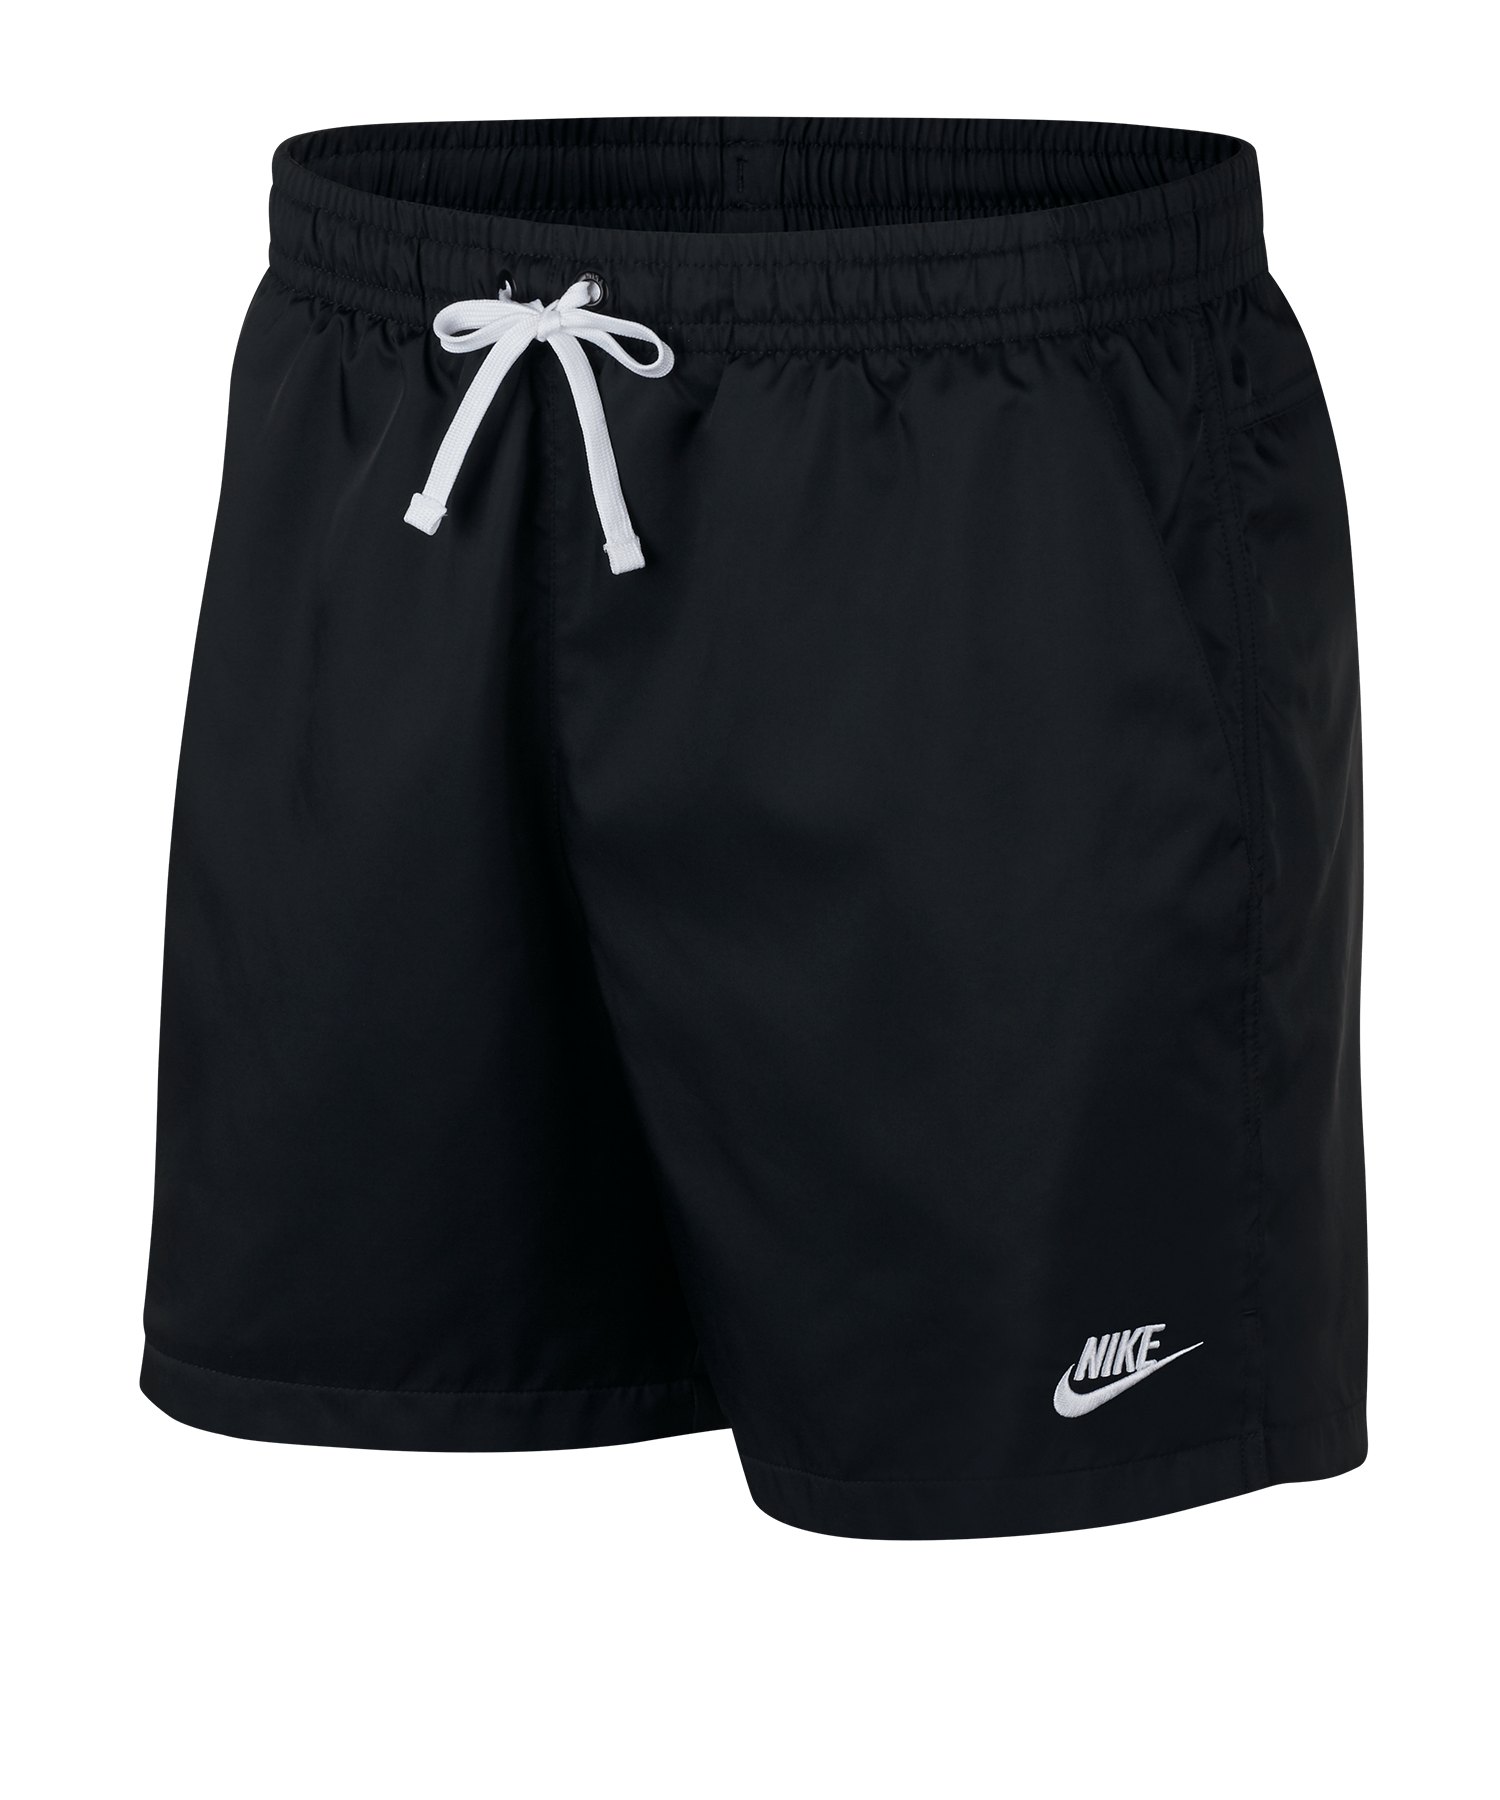 Nike Sportswear Woven Short Schwarz F010 - Schwarz